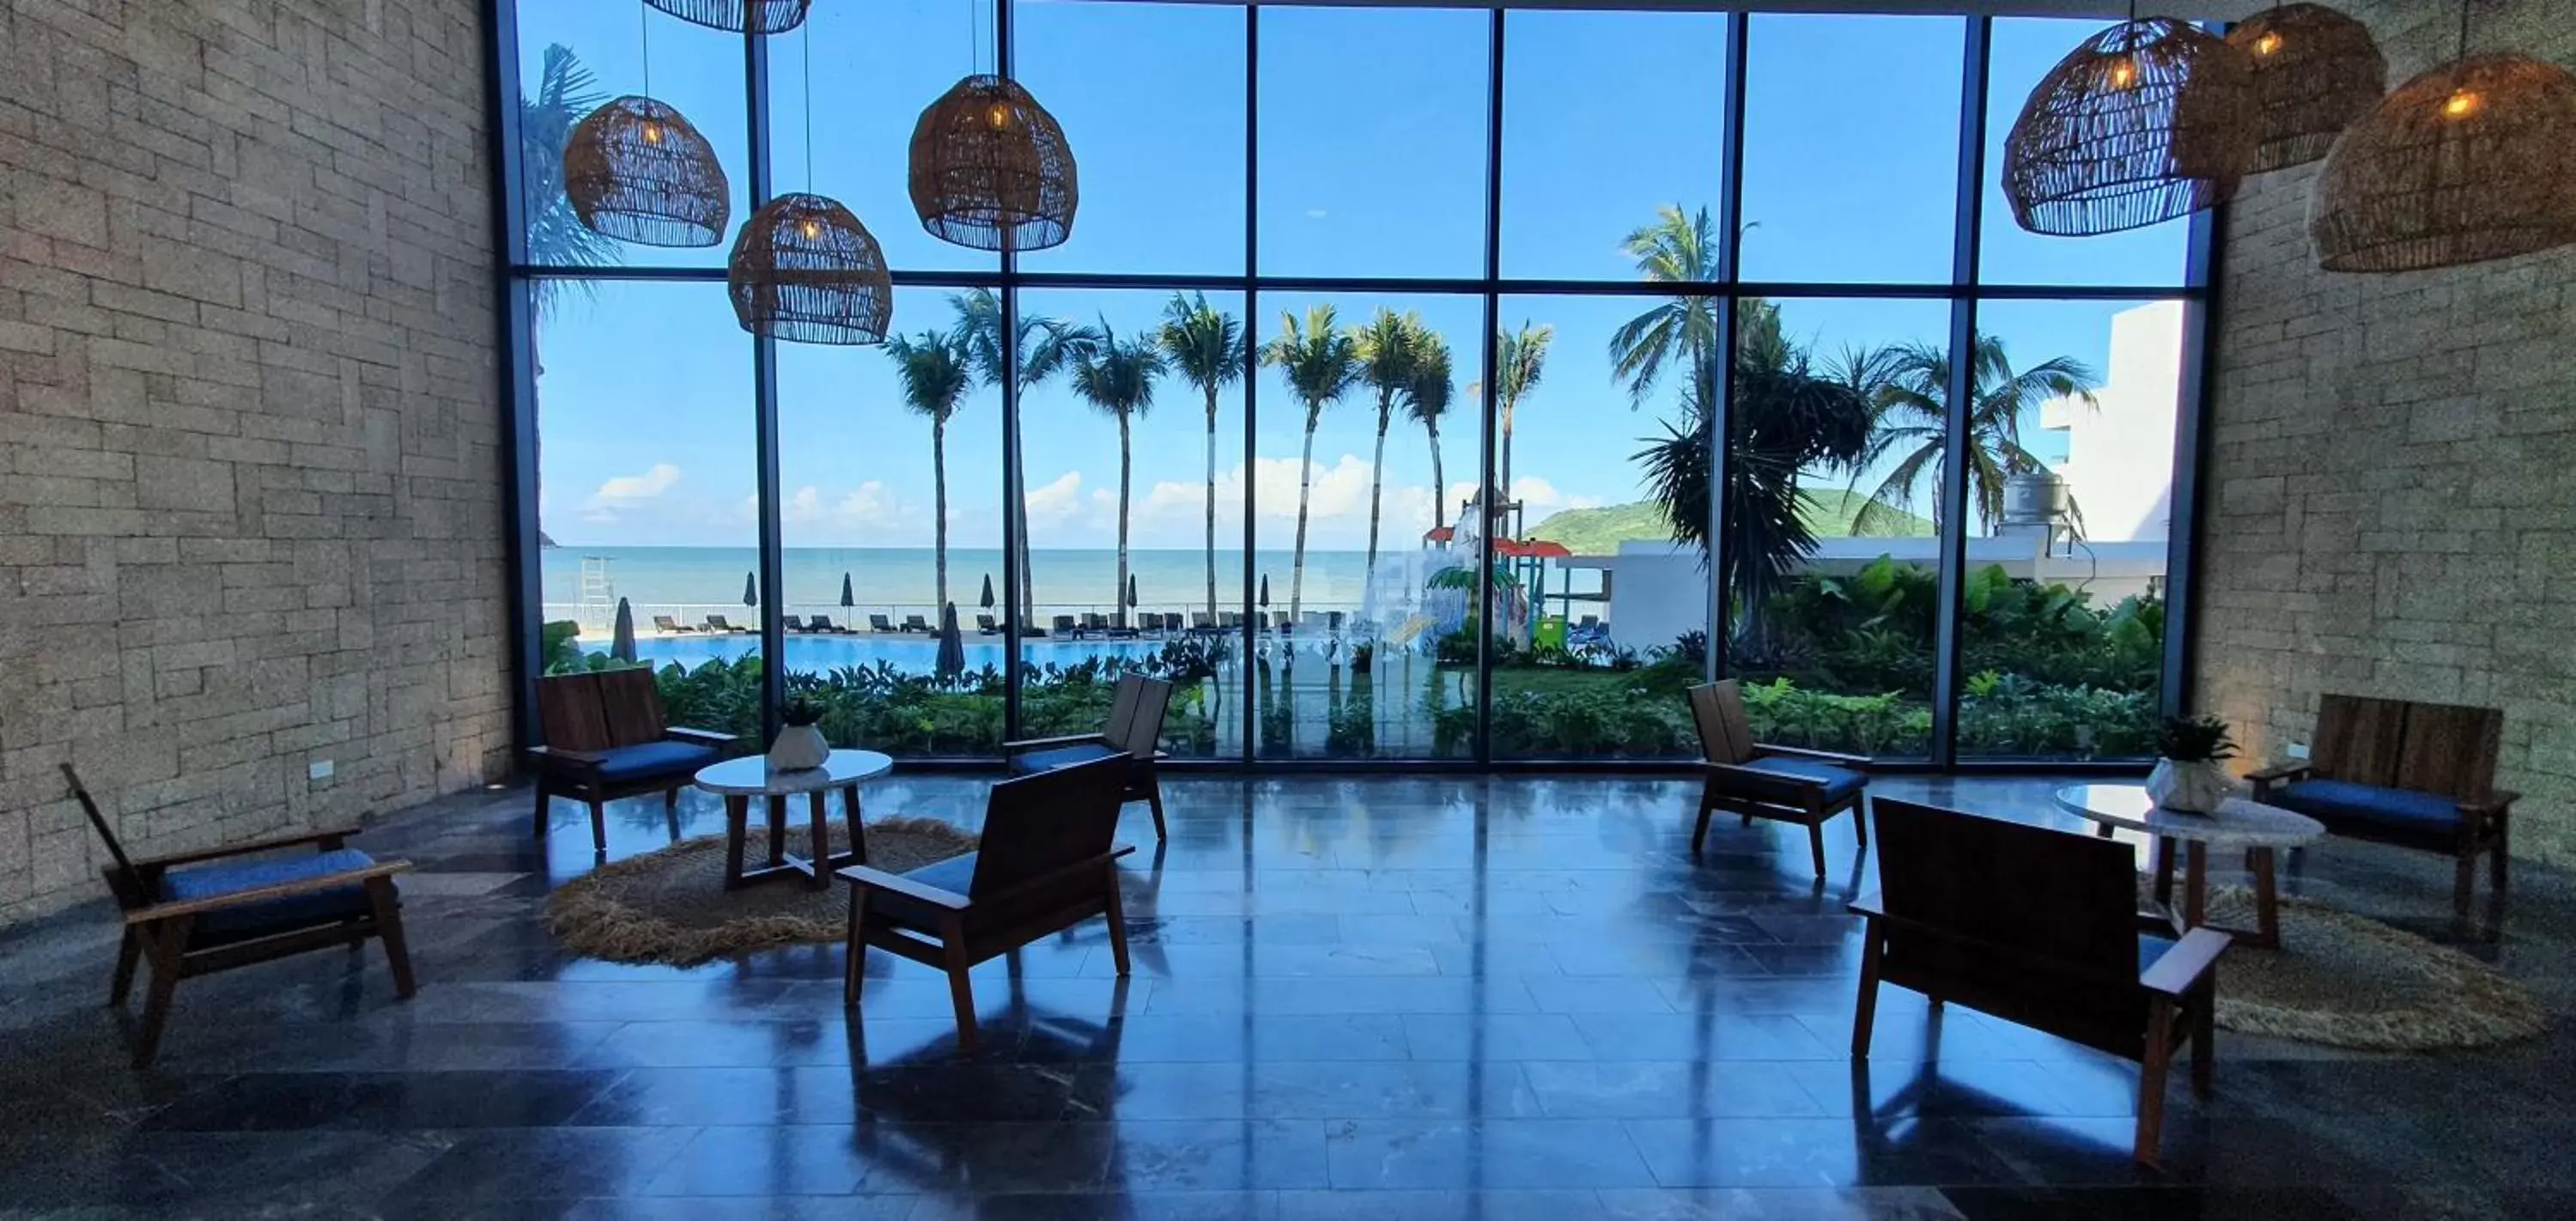 Lobby or reception in Viaggio Resort Mazatlán